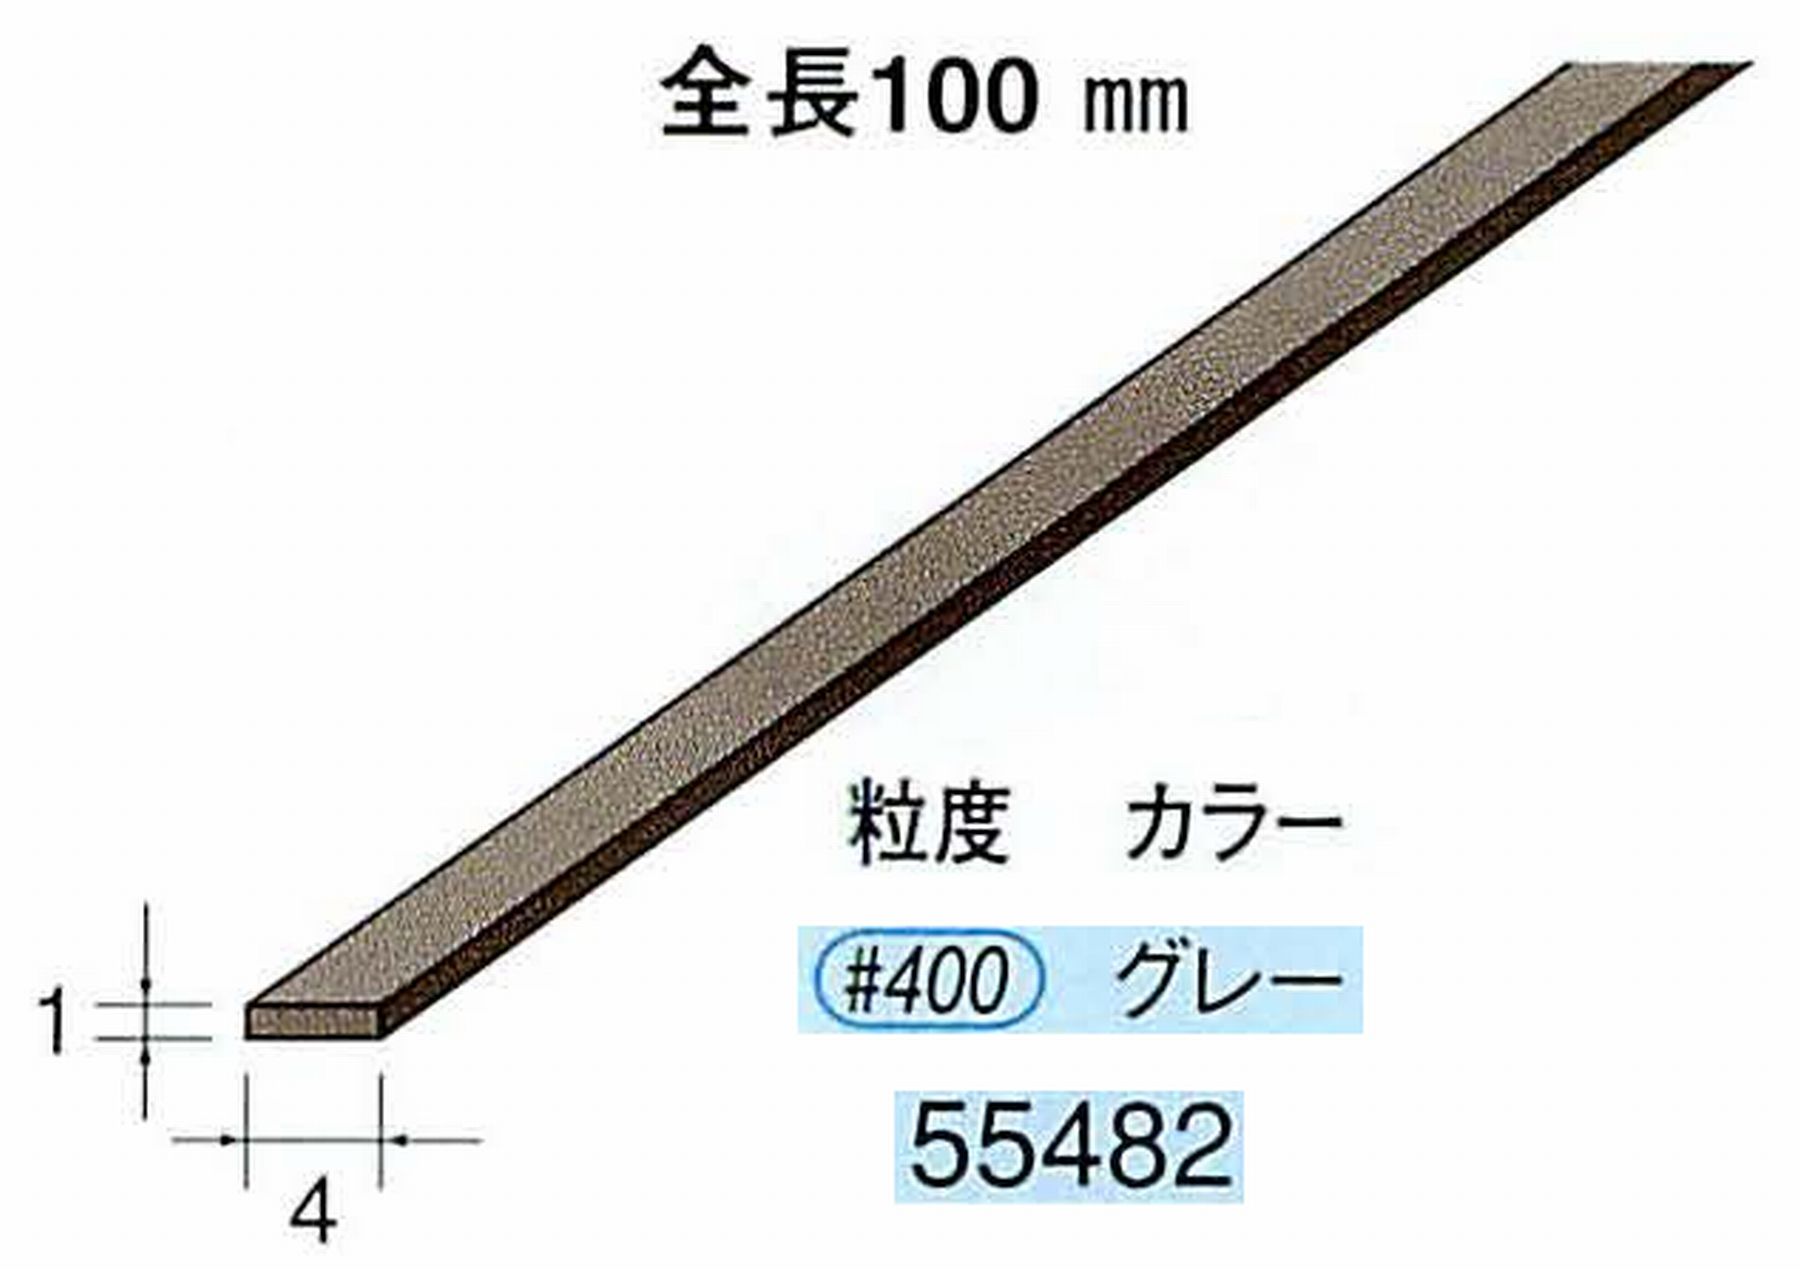 ナカニシ/NAKANISHI ダイヤモンドセラファイバー砥石 全長100mm グレー 55482